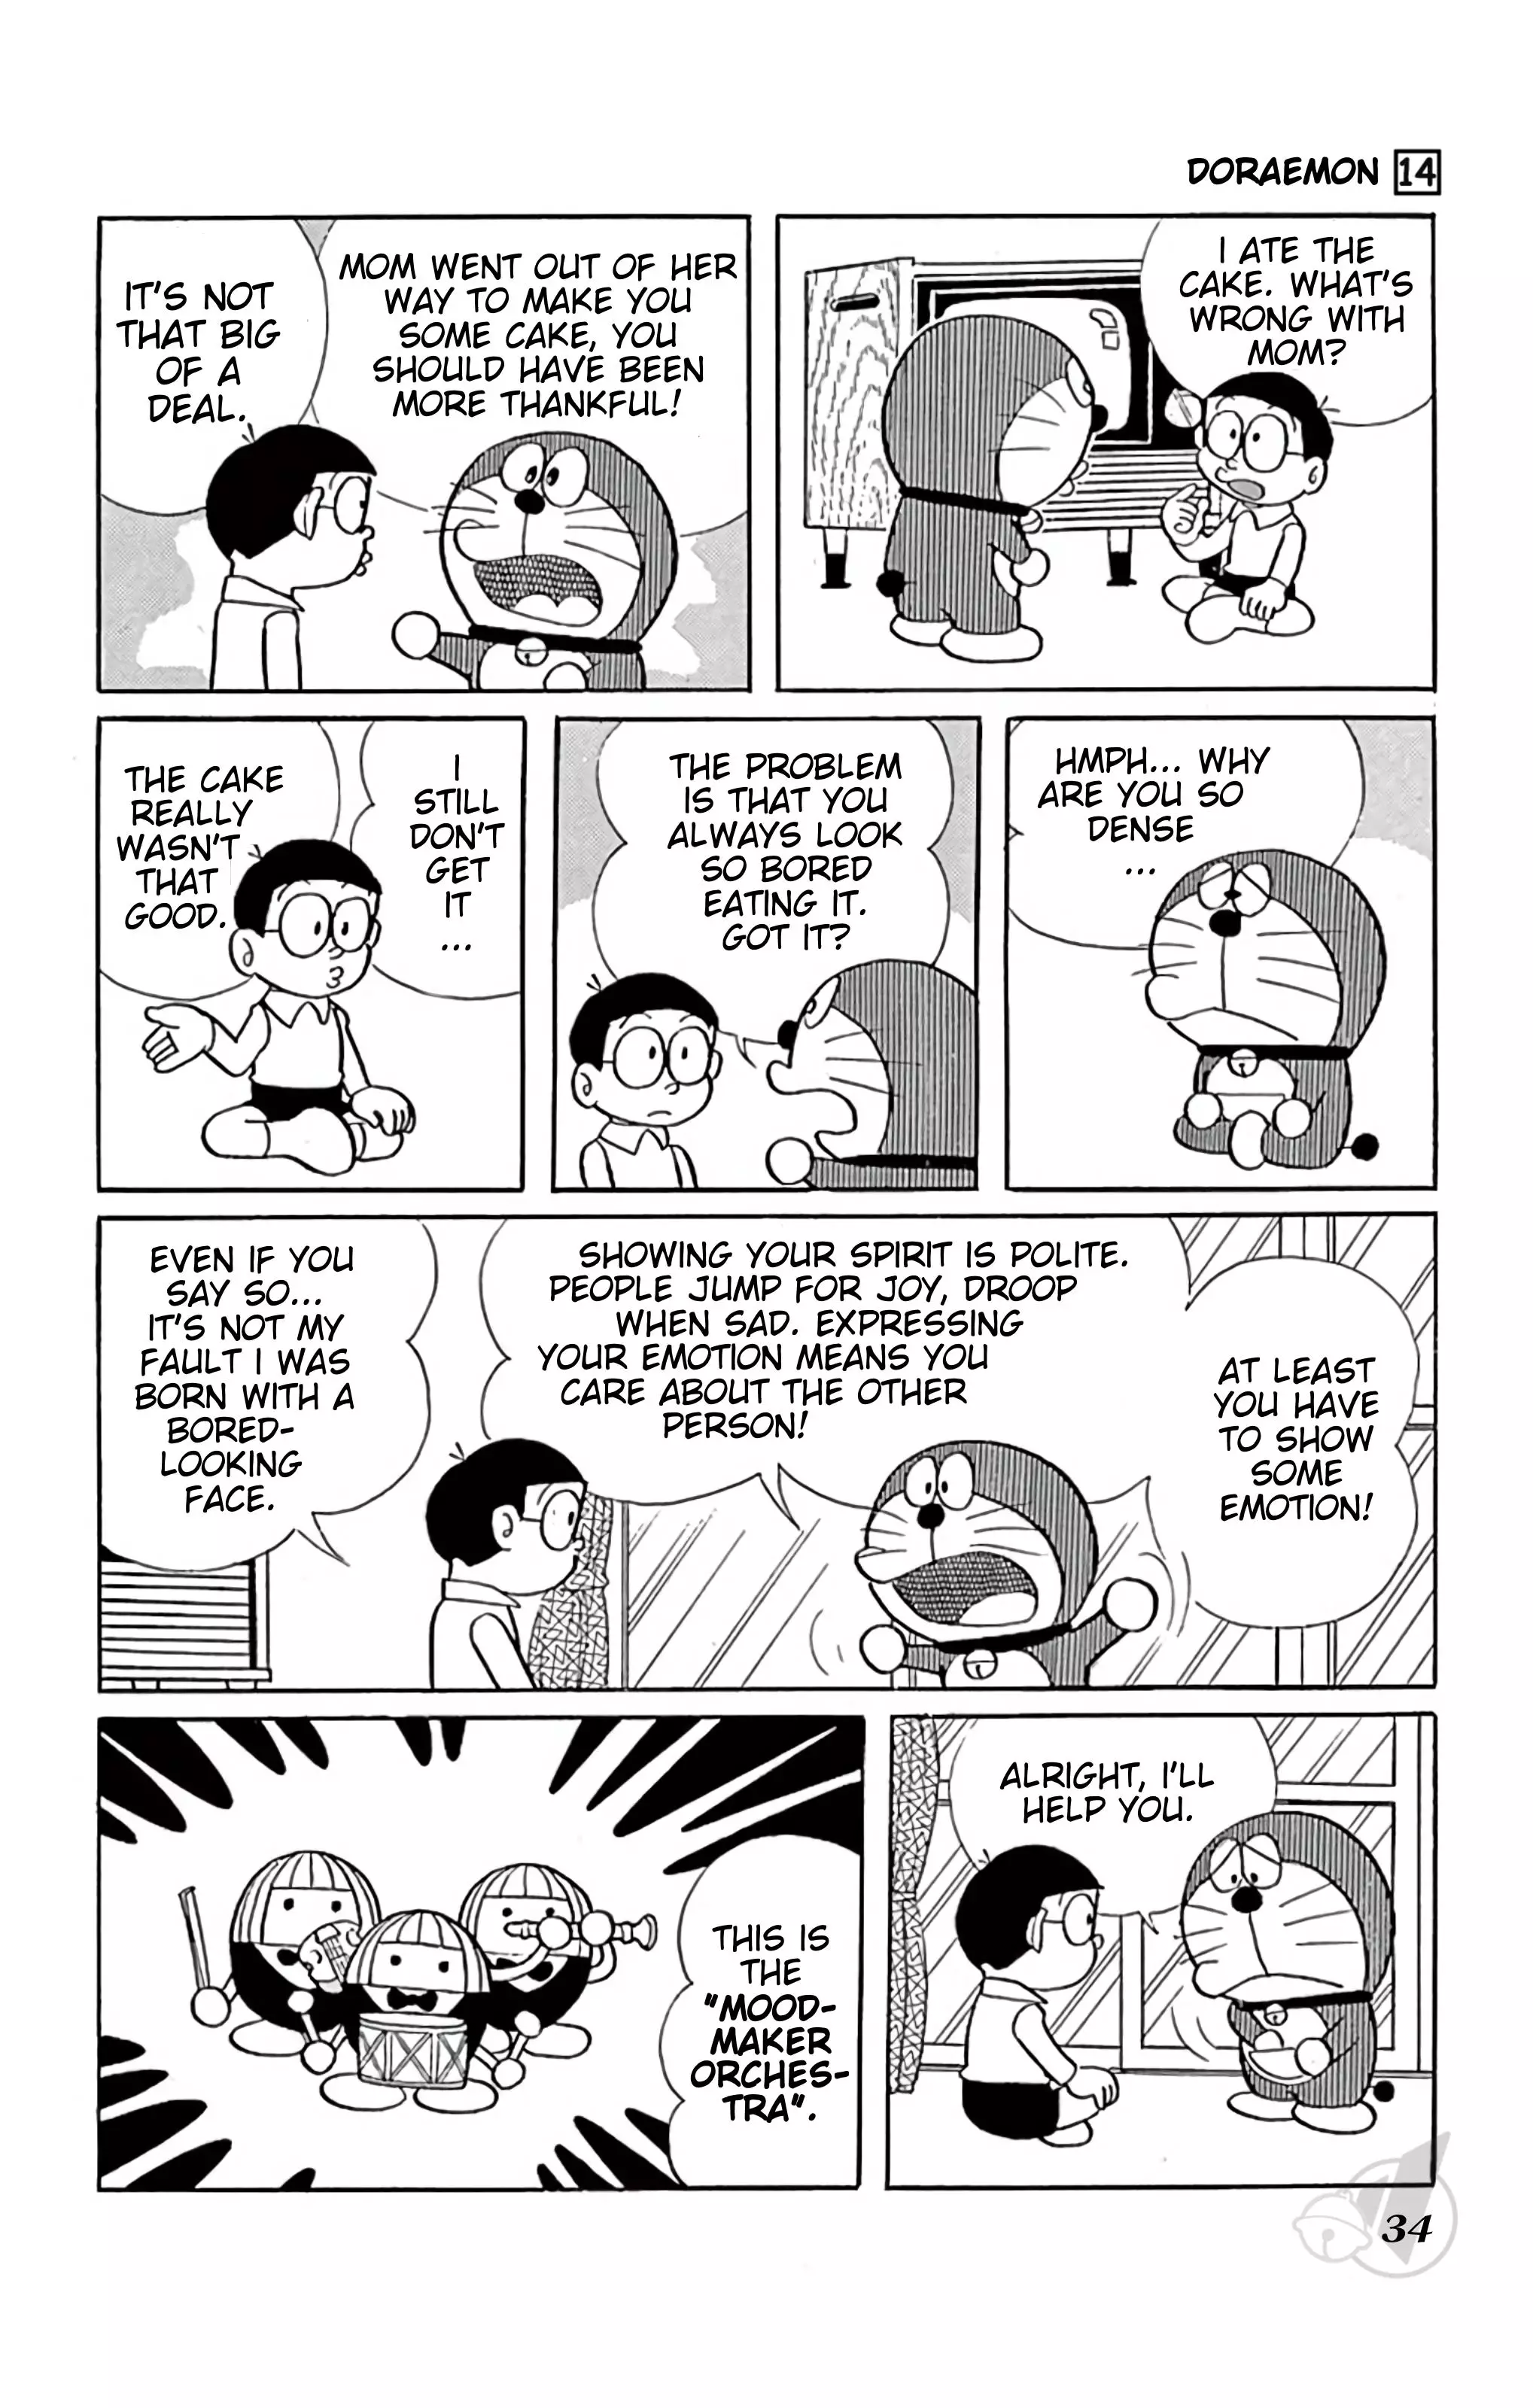 Doraemon - 249 page 3-4687a9f2